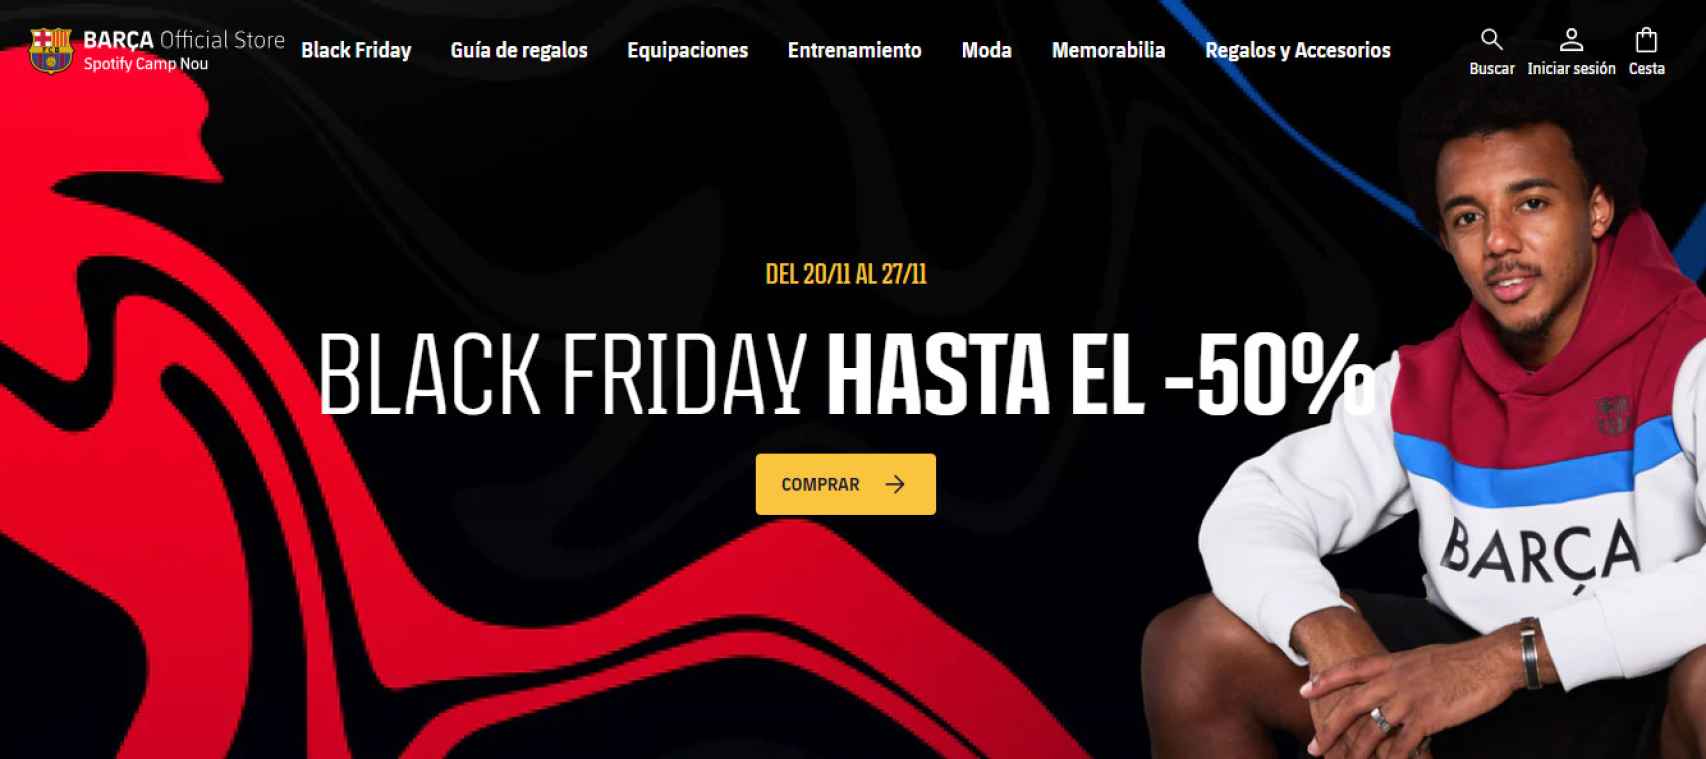 Captura de la promoción del Barça para el Black Friday